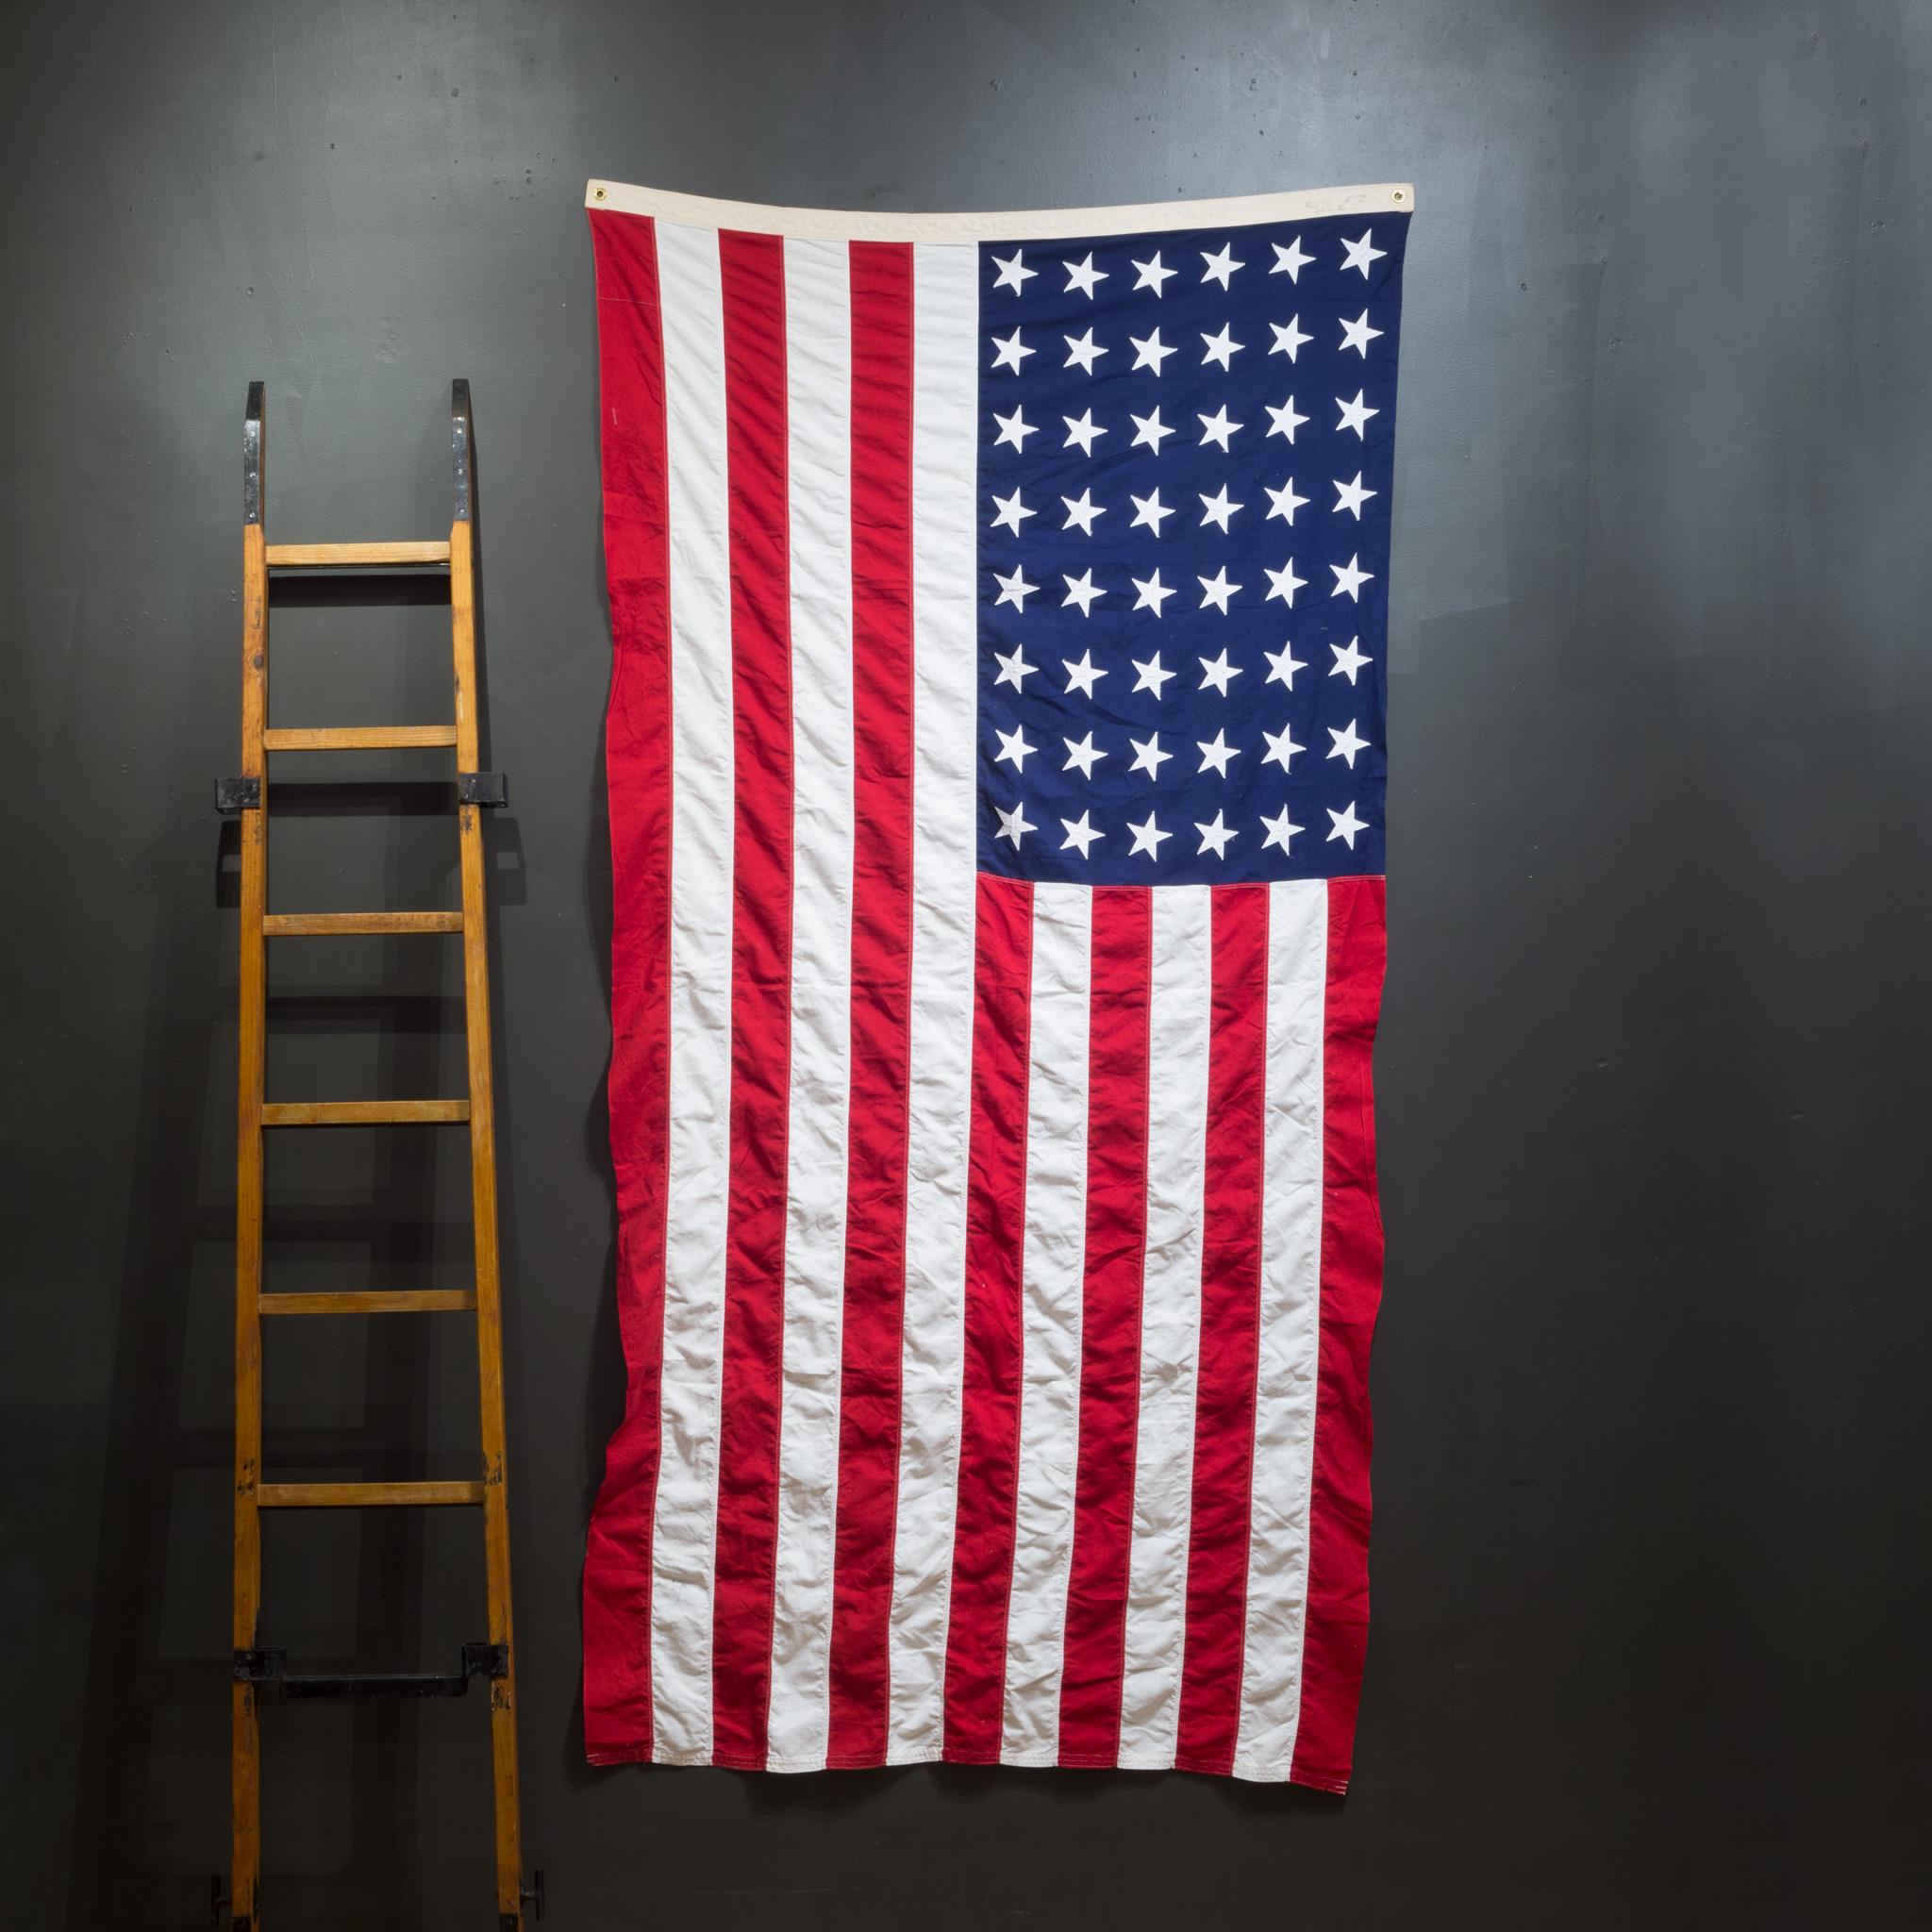 À PROPOS DE

Il s'agit d'un drapeau américain monumental original fabriqué par Valley Forge Co. avec 48 étoiles et rayures cousues à la main. Il est en bon état et possède des œillets métalliques pour le suspendre.

 CREATEUR Valley Forge Co.
